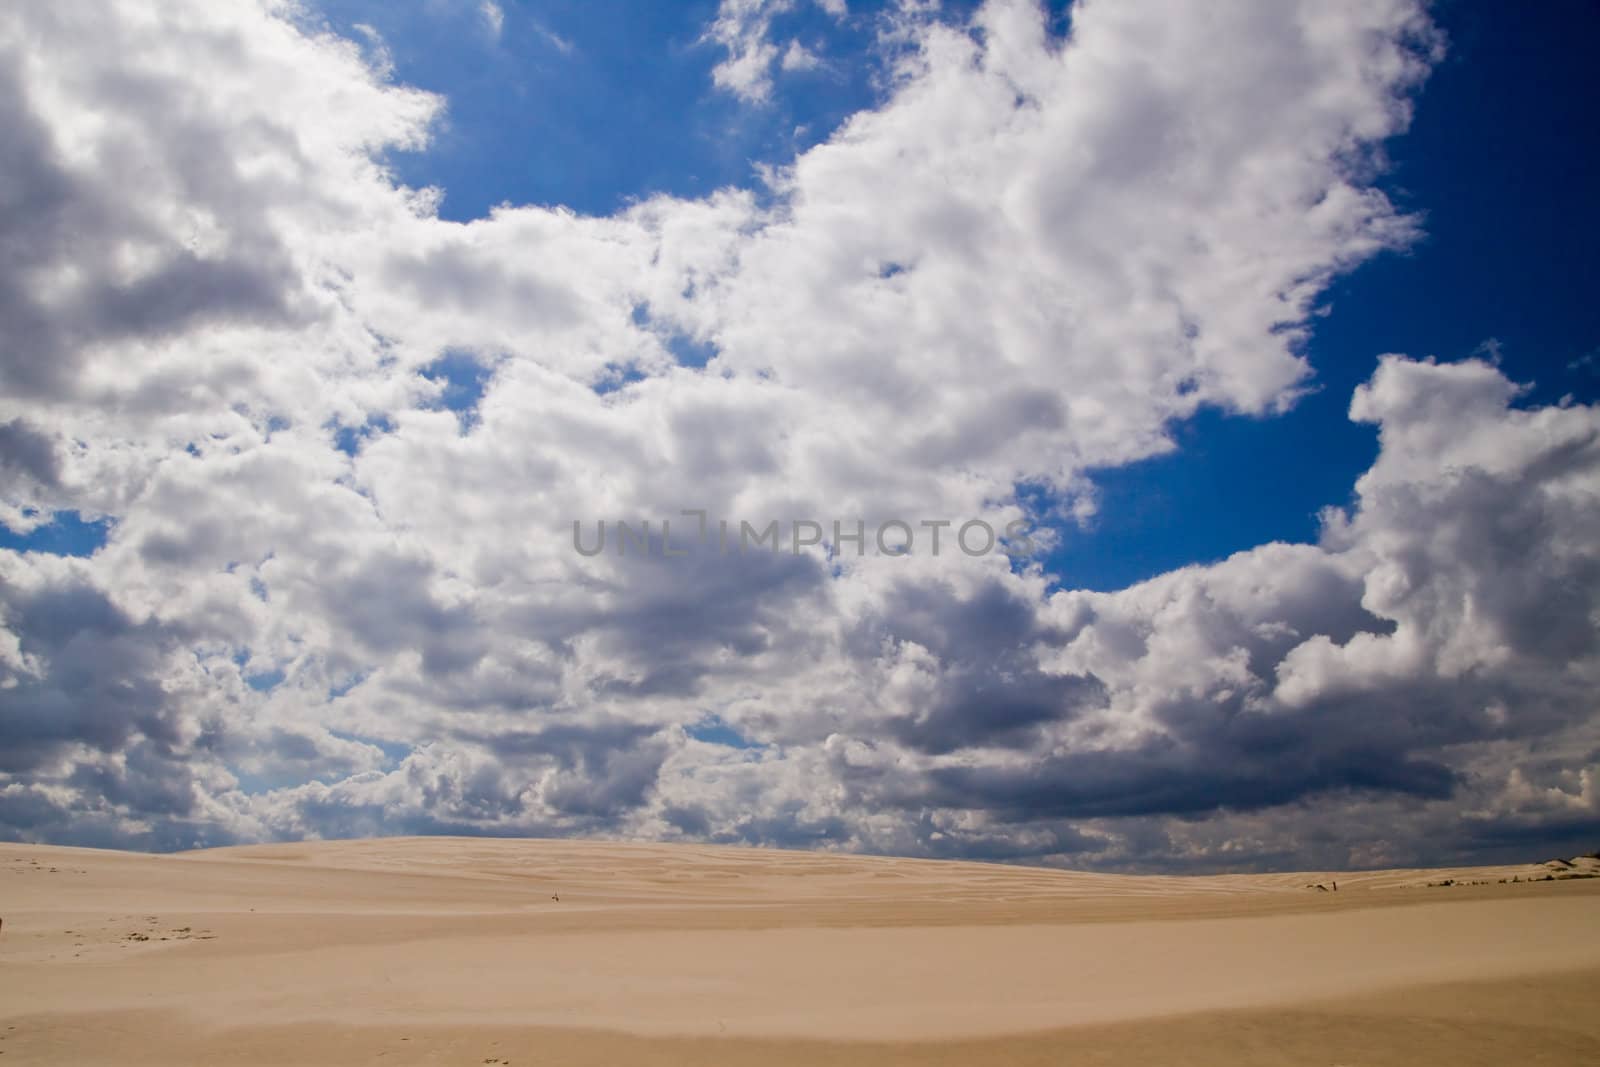 The moving sands in the Polish Desert near Leba